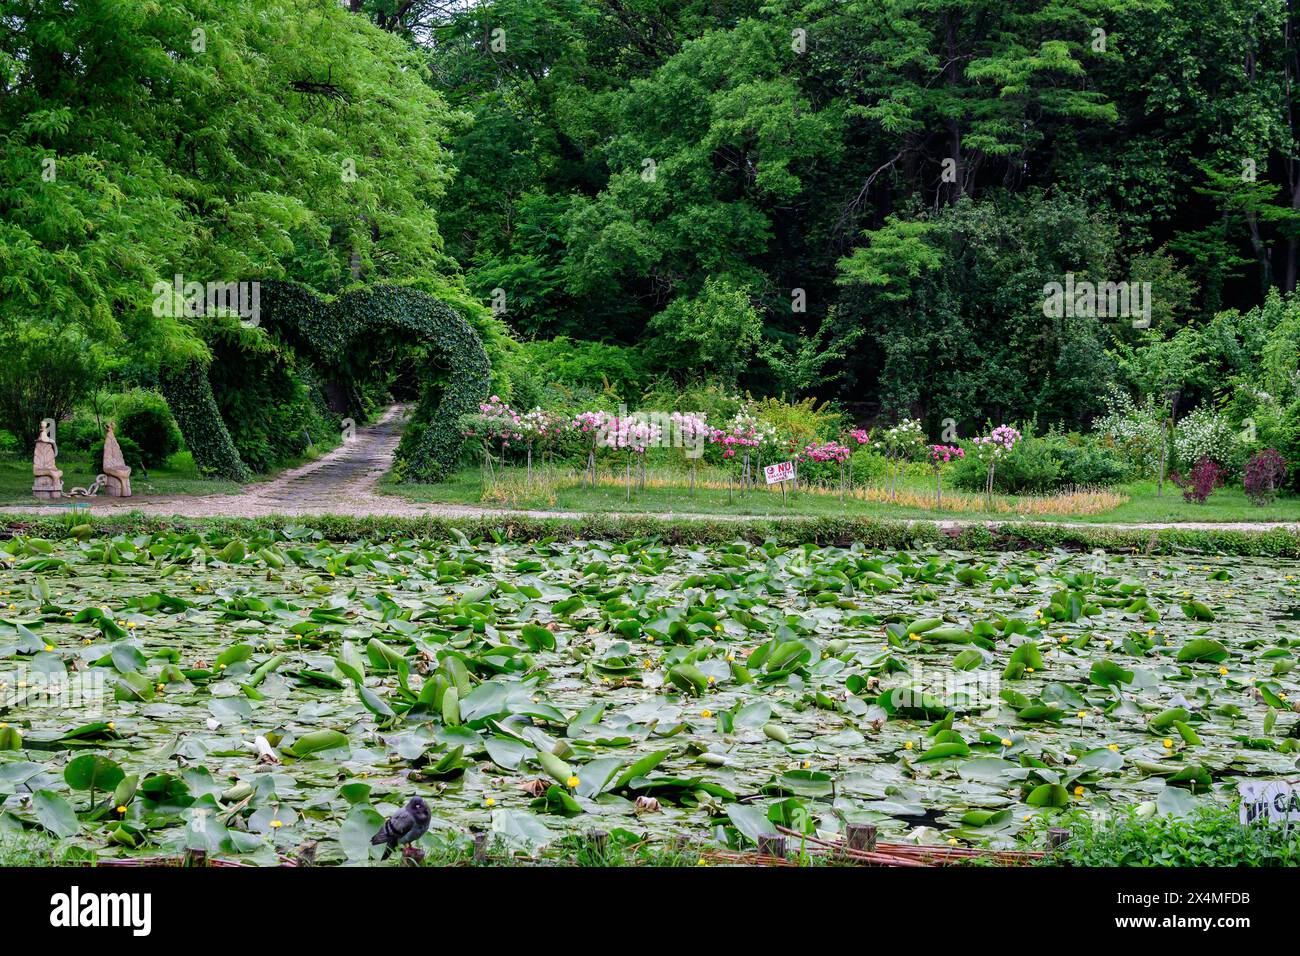 Lebendige Landschaft im Alexandru Buia Botanical Garden von Craiova in Dolj County, Rumänien, mit See, Wasserlillien und großen grünen Tres in einem wunderschönen s Stockfoto